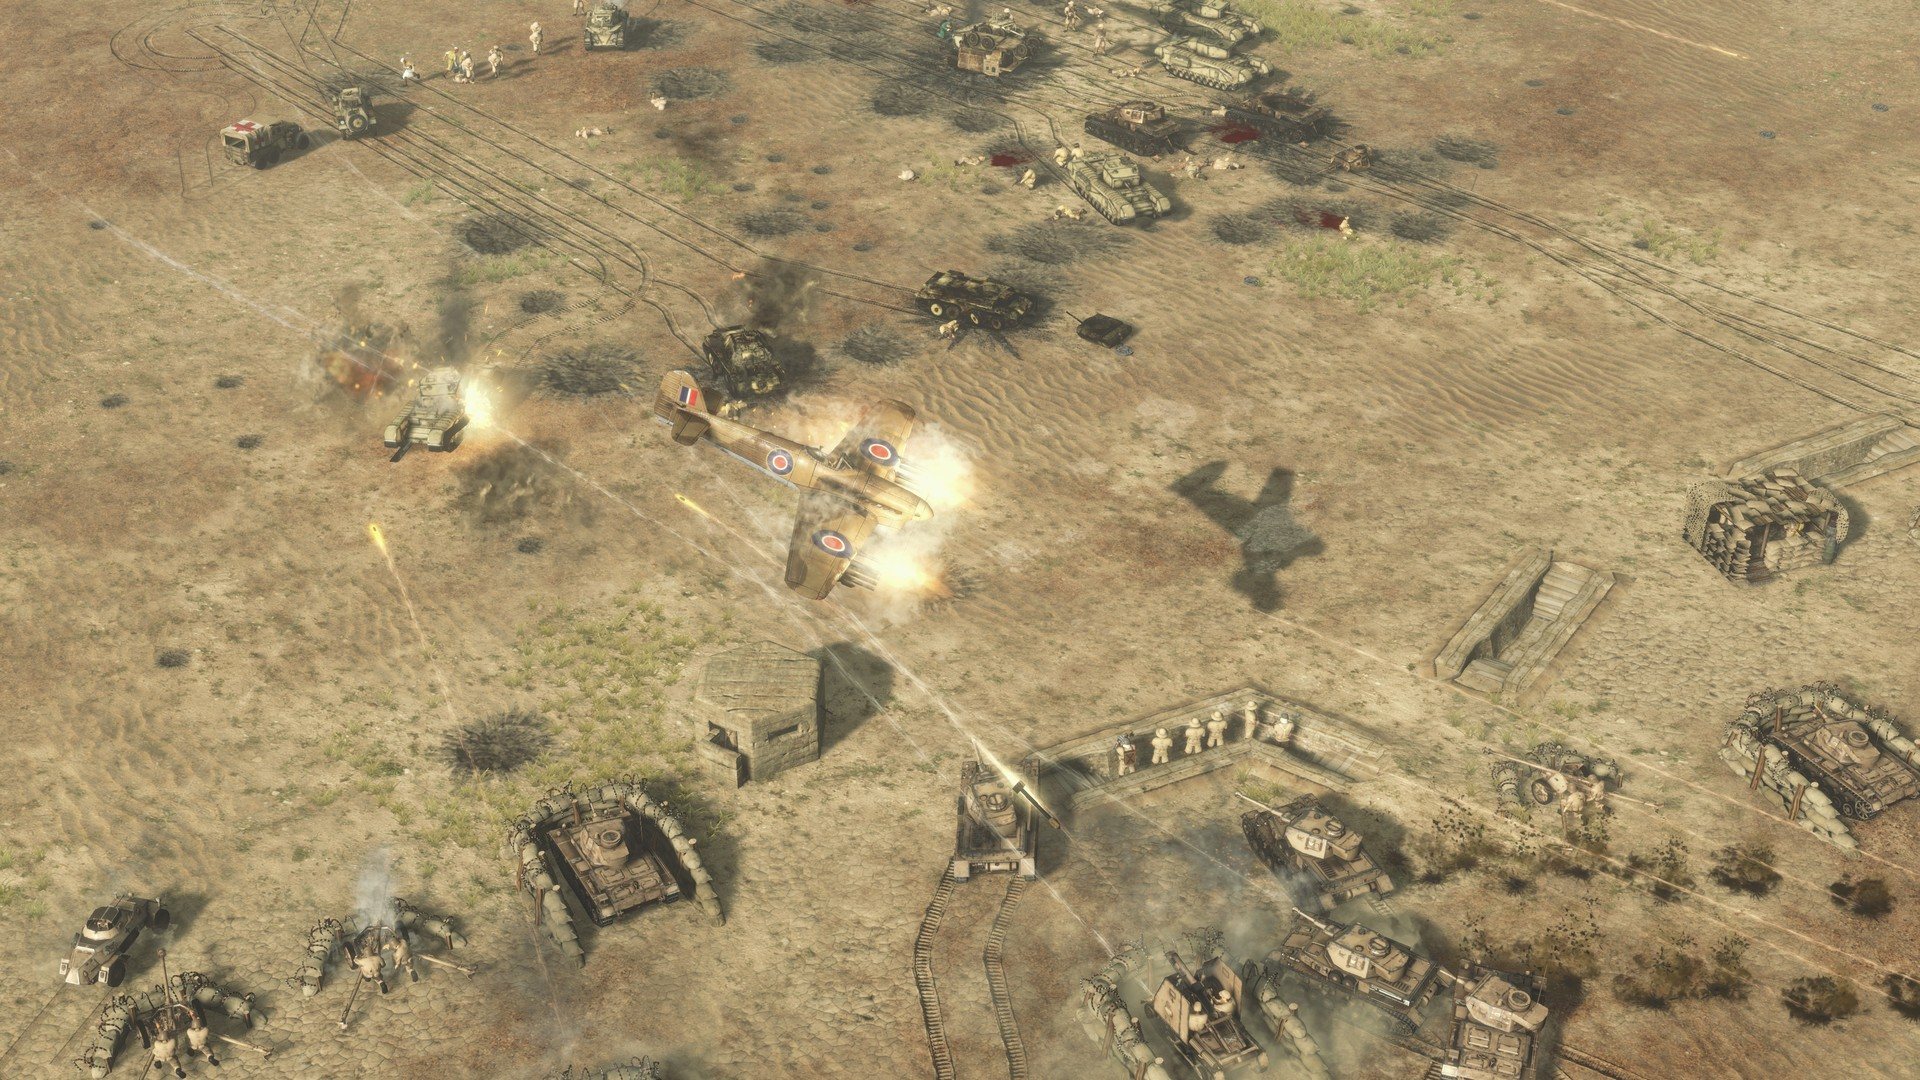 Sudden Strike 4 - Africa: Desert War DLC Steam CD Key, 1.8 usd